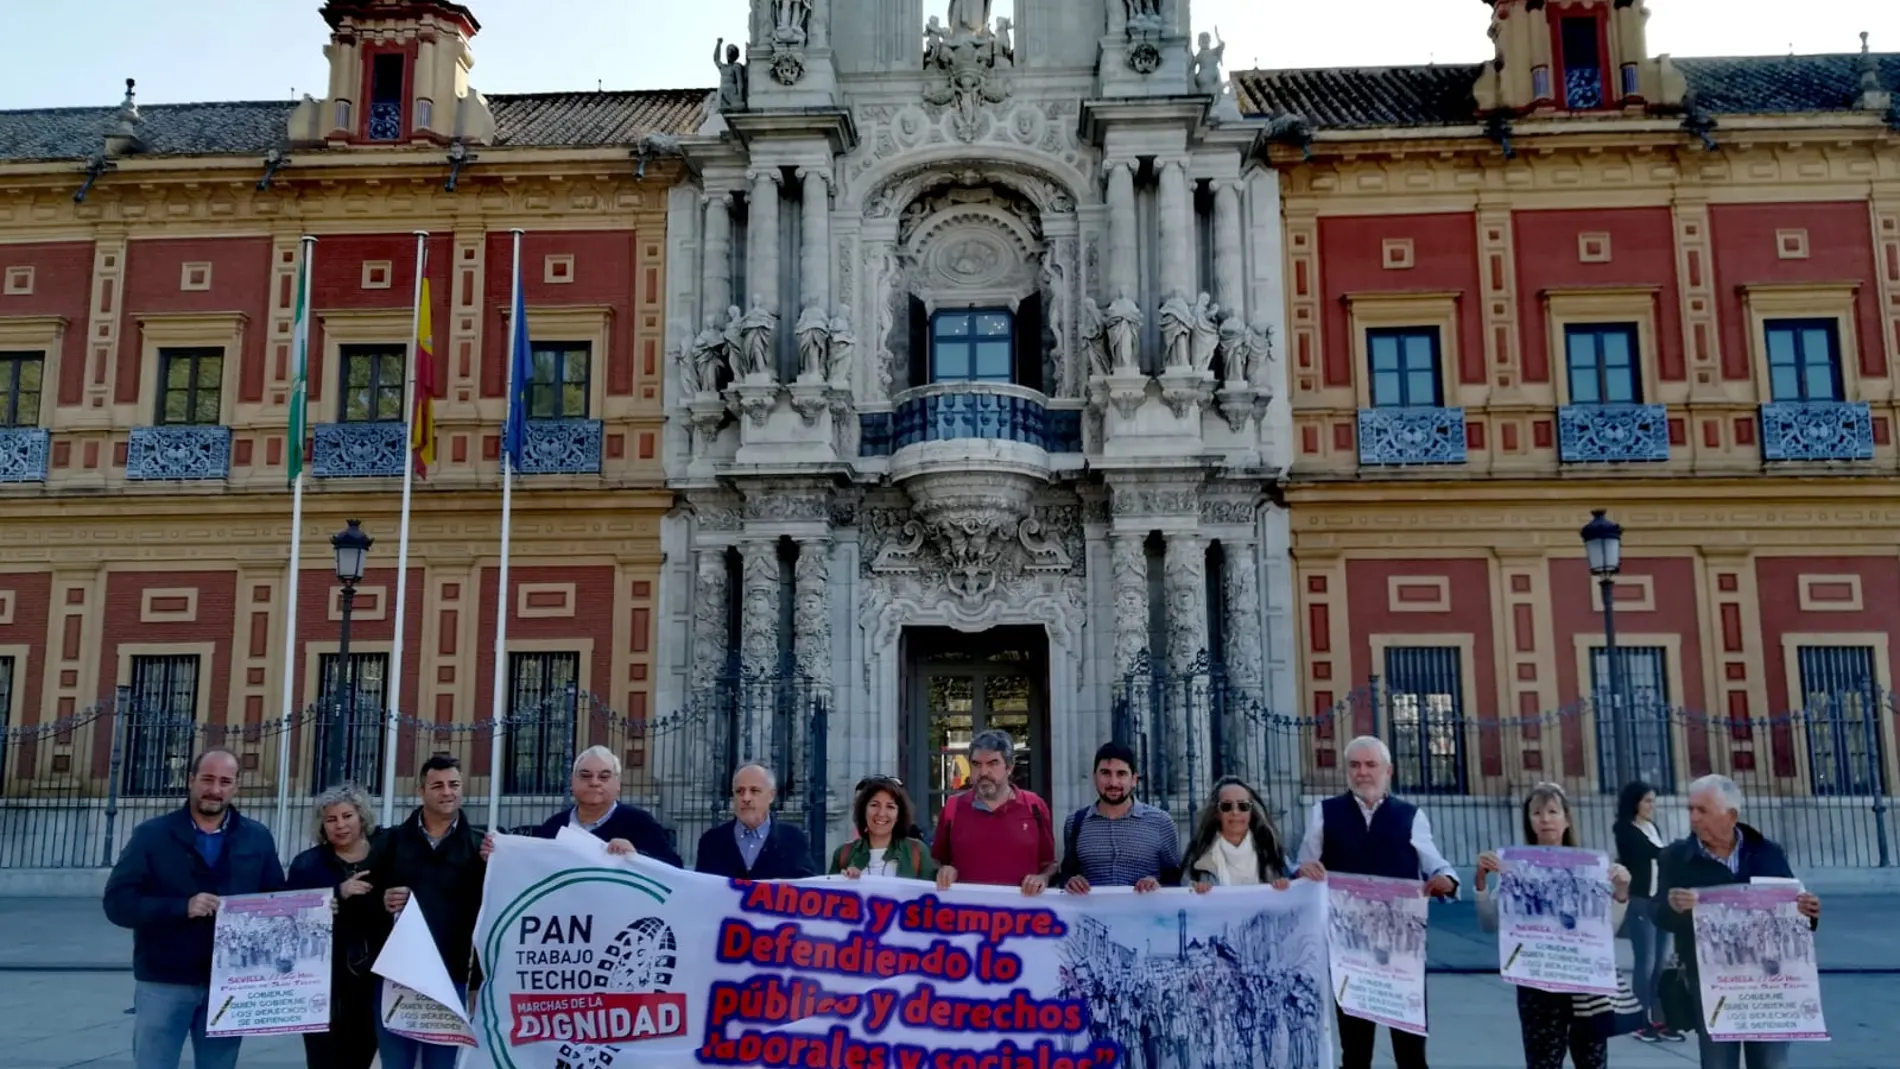 Representantes de Caminando/Marchas por la Dignidad frente al Palacio de San Telmo en Sevilla reivindicando los servicios públicos / Foto: La Razón